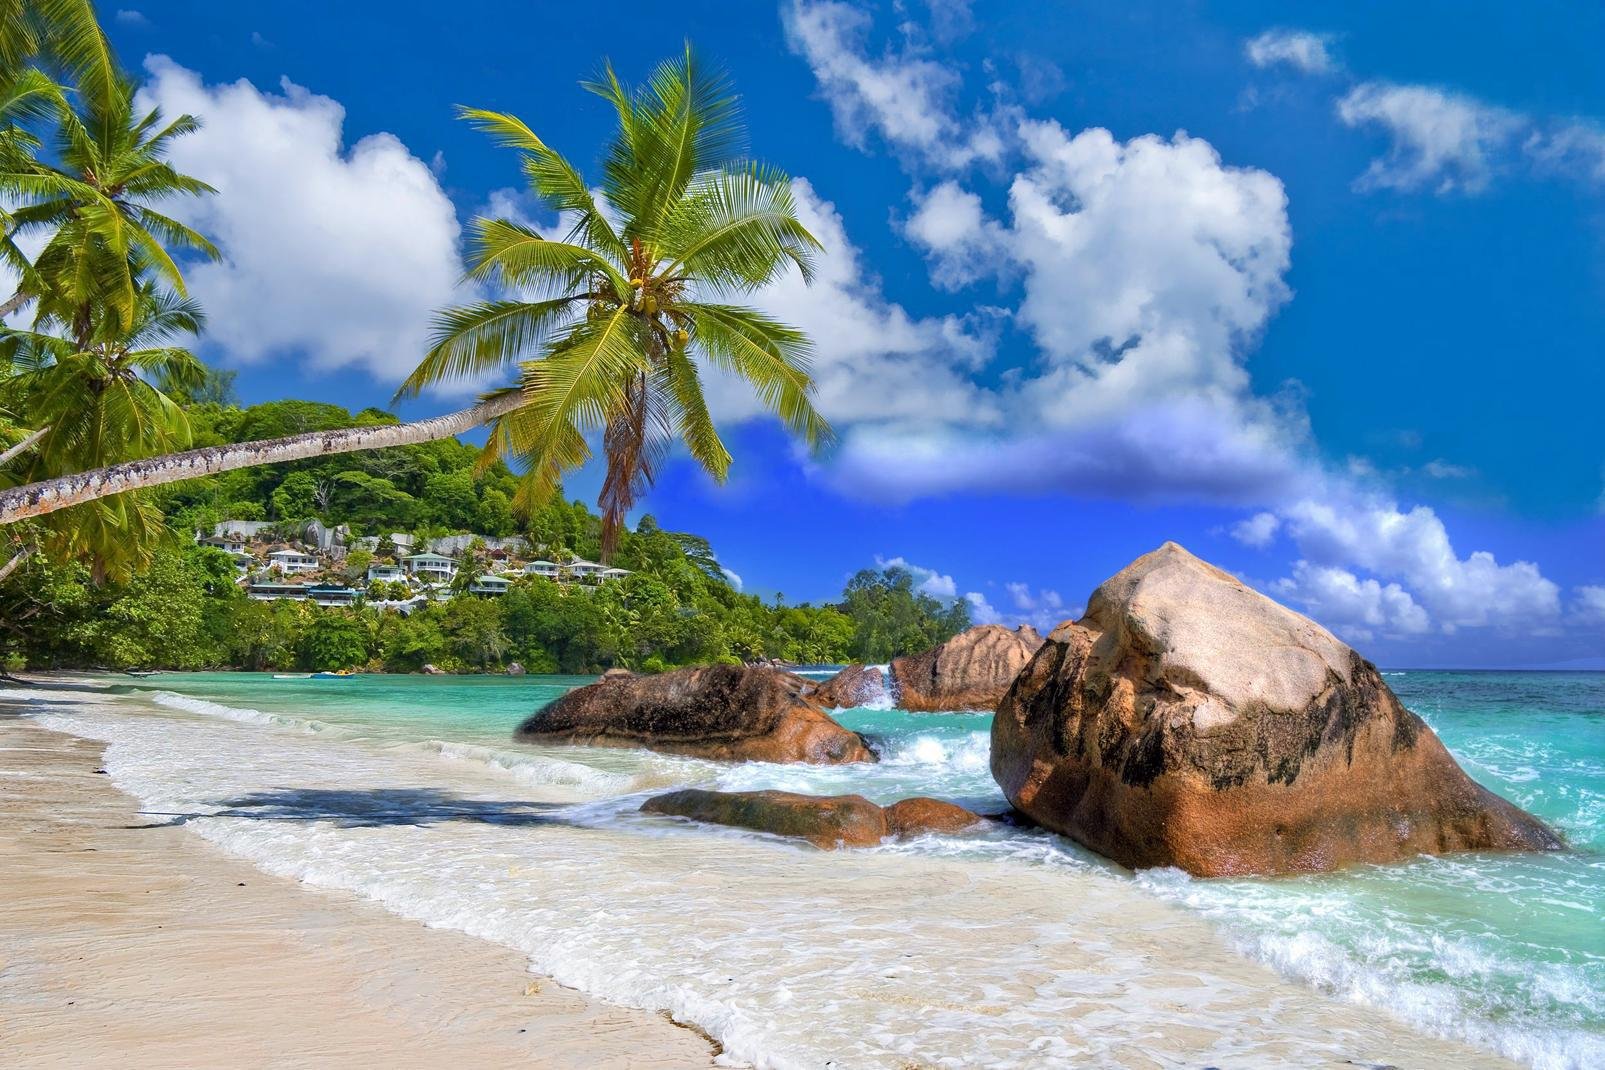 Avec son aéroport international, Mahé constitue un point de passage obligé pour les voyageurs se rendant aux Seychelles. Cette île montagneuse, longue de 27 km pour 8 km de large, est la plus grande de l'archipel. C'est aussi la plus peuplée avec ses 60 000 habitants, soit 9 Seychellois sur 10. Mais Mahé a beau être la plus urbanisée de toutes les îles, elle n'en offre pas moins des paysages sauvages ...